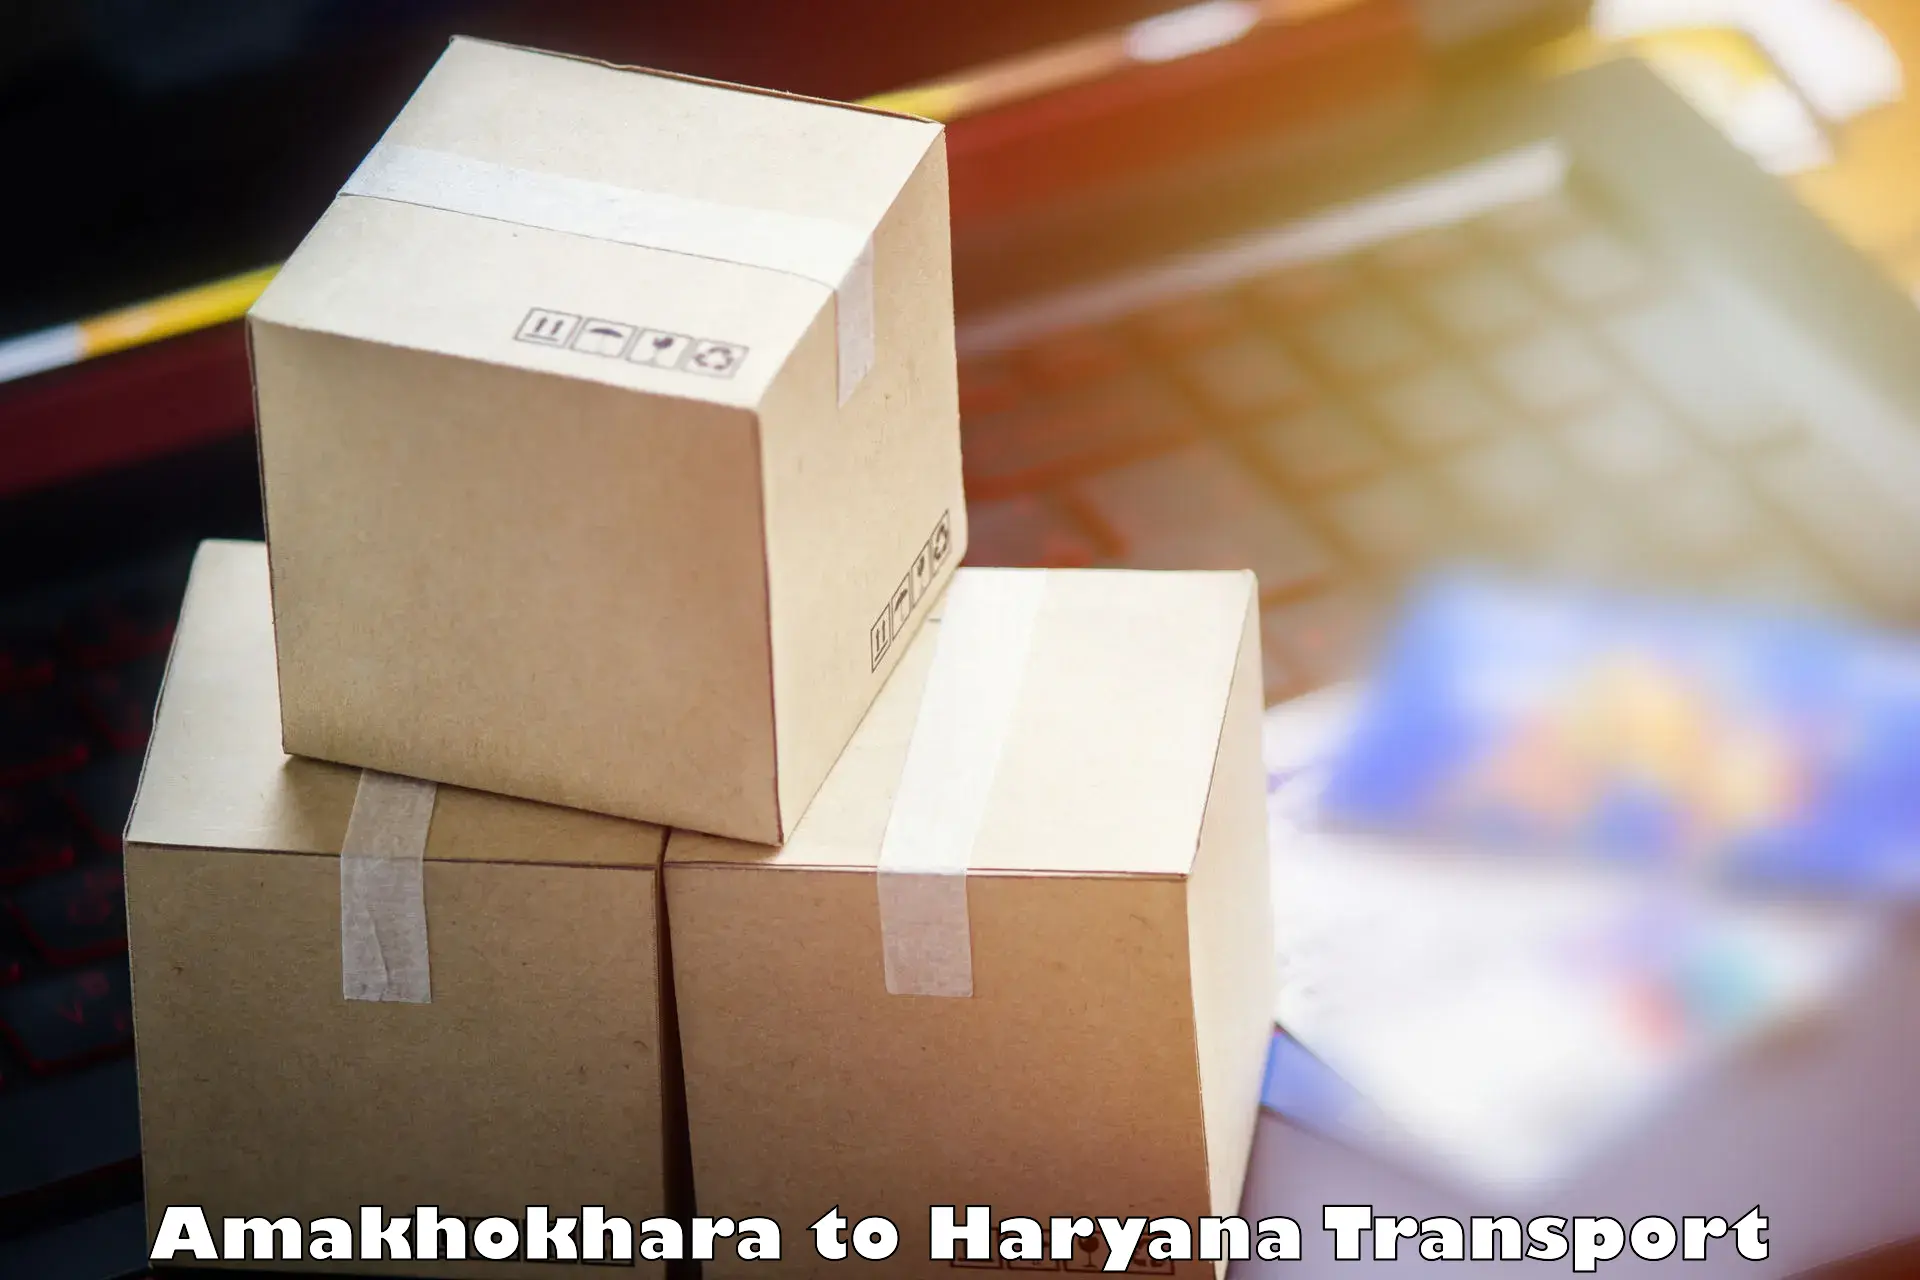 Cargo transportation services Amakhokhara to Pehowa